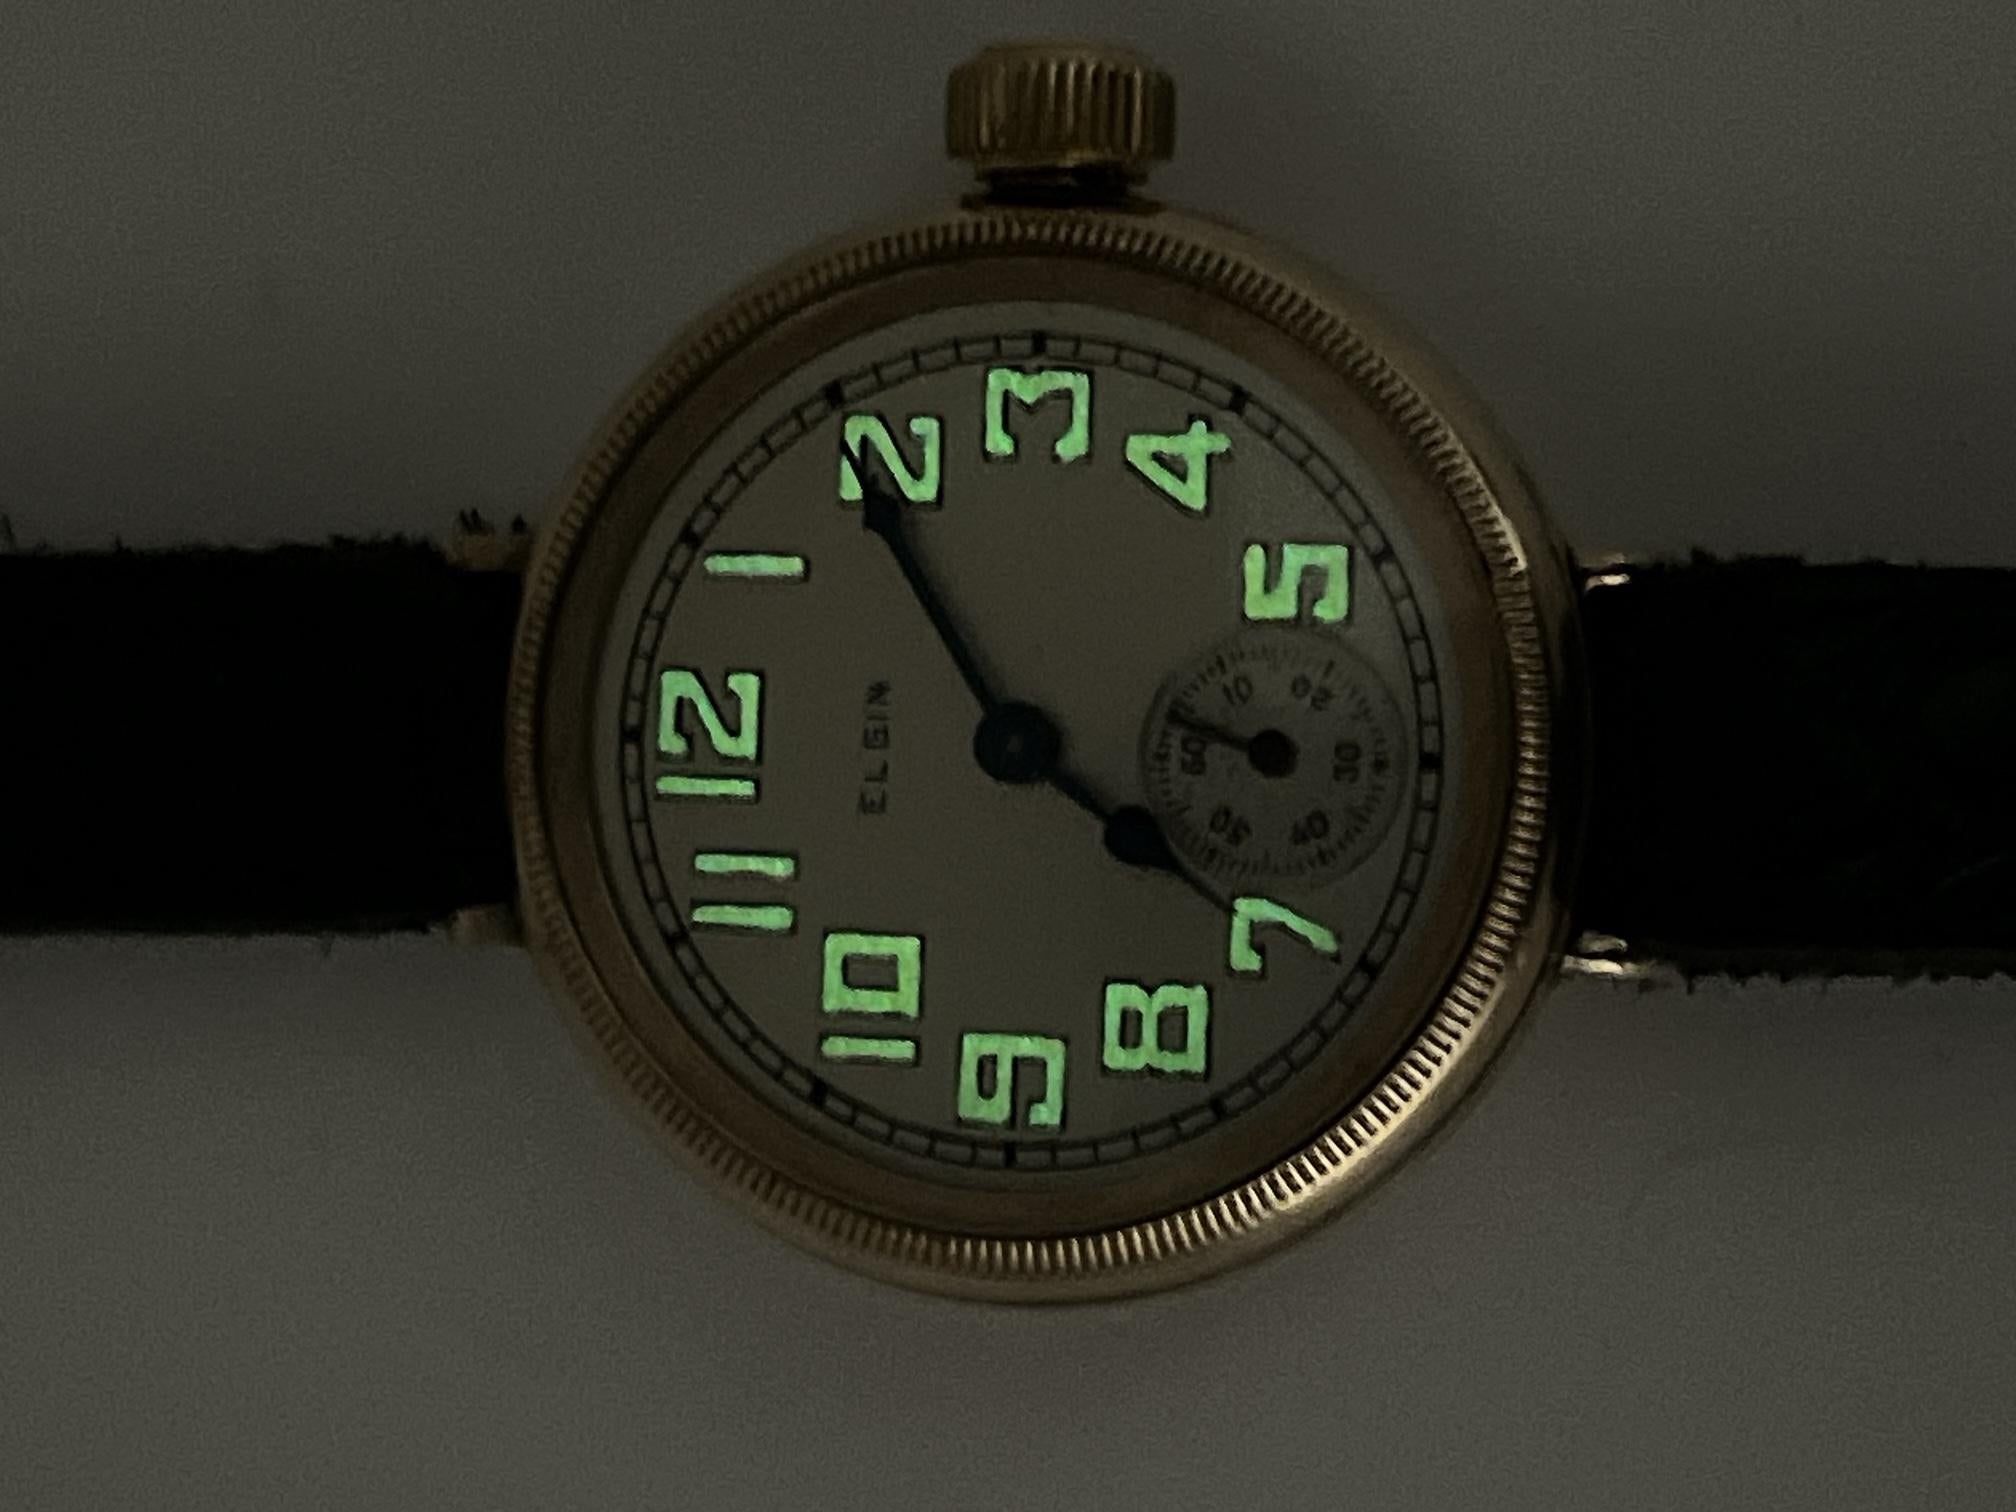 ww1 wrist watch